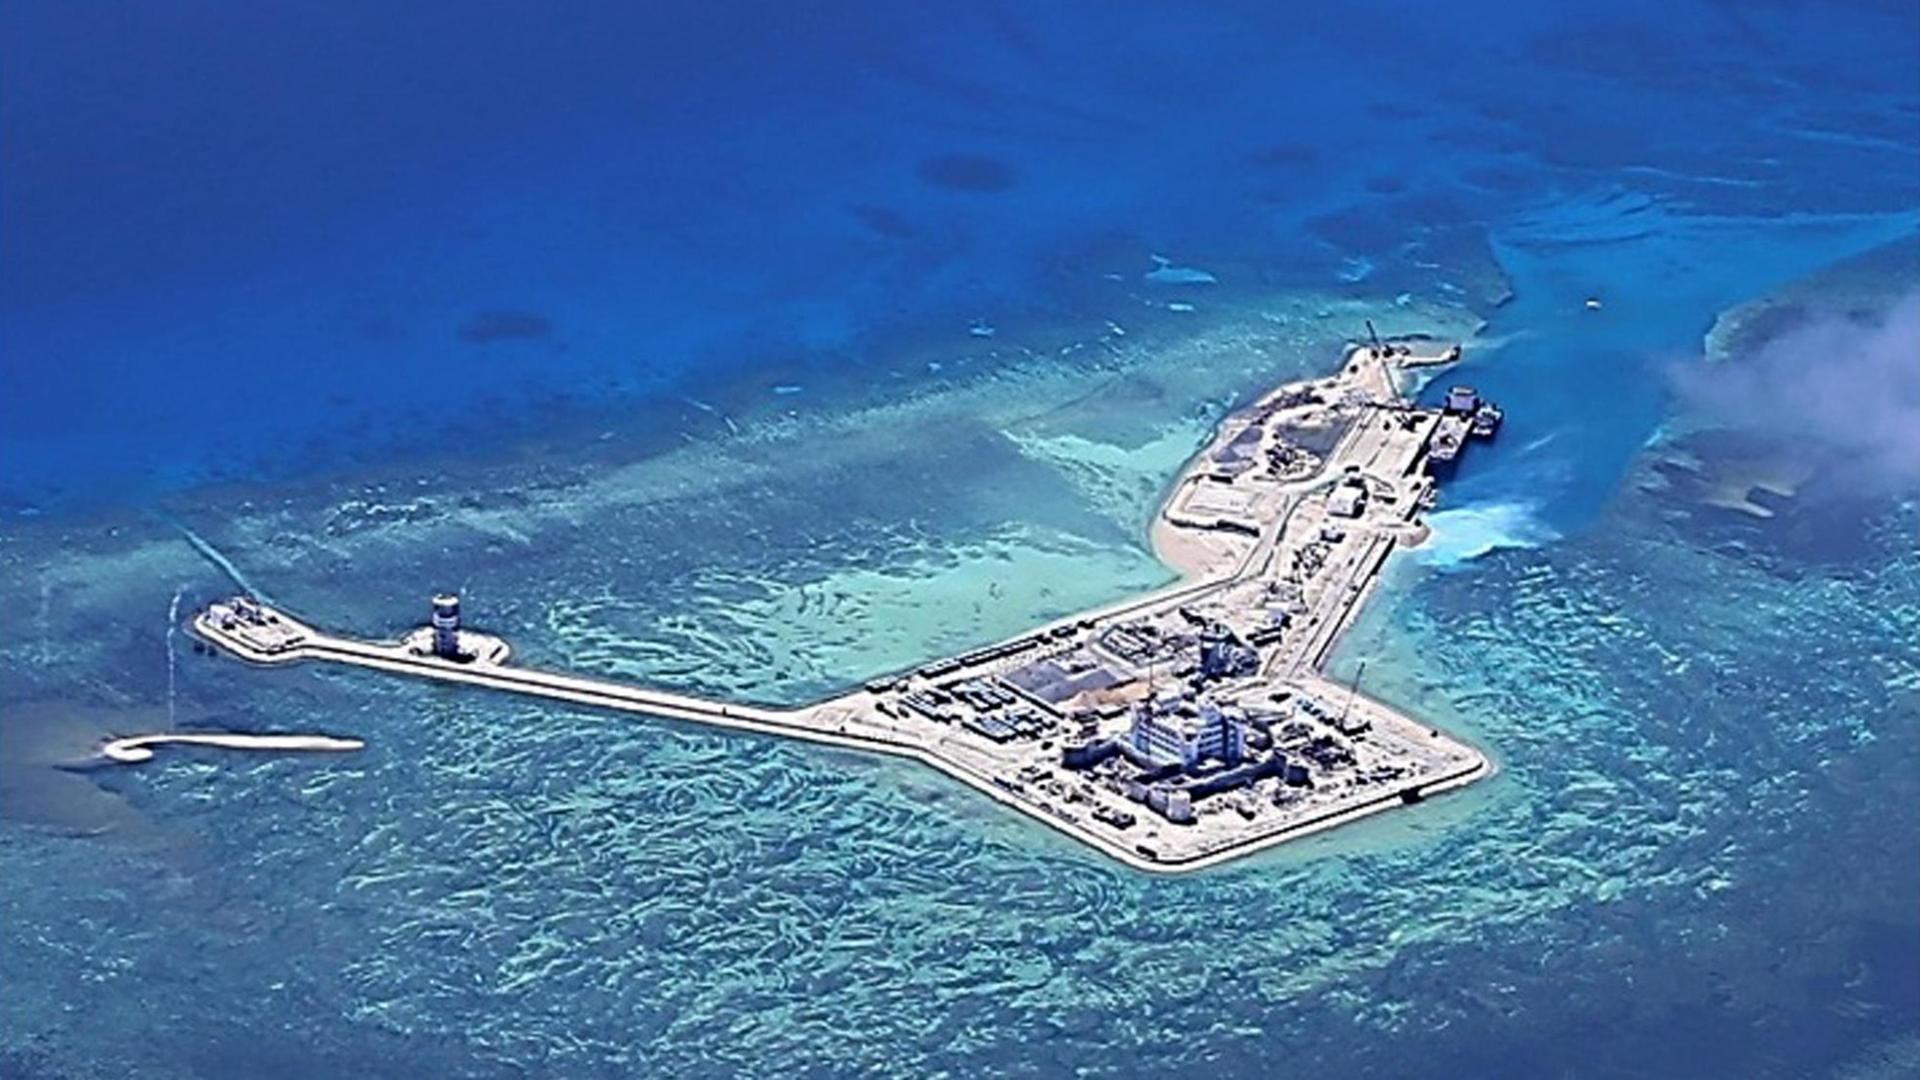 Das Bild des philippinischen Militärs soll chinesische Sandinsel im südchinesischen Meer zeigen.